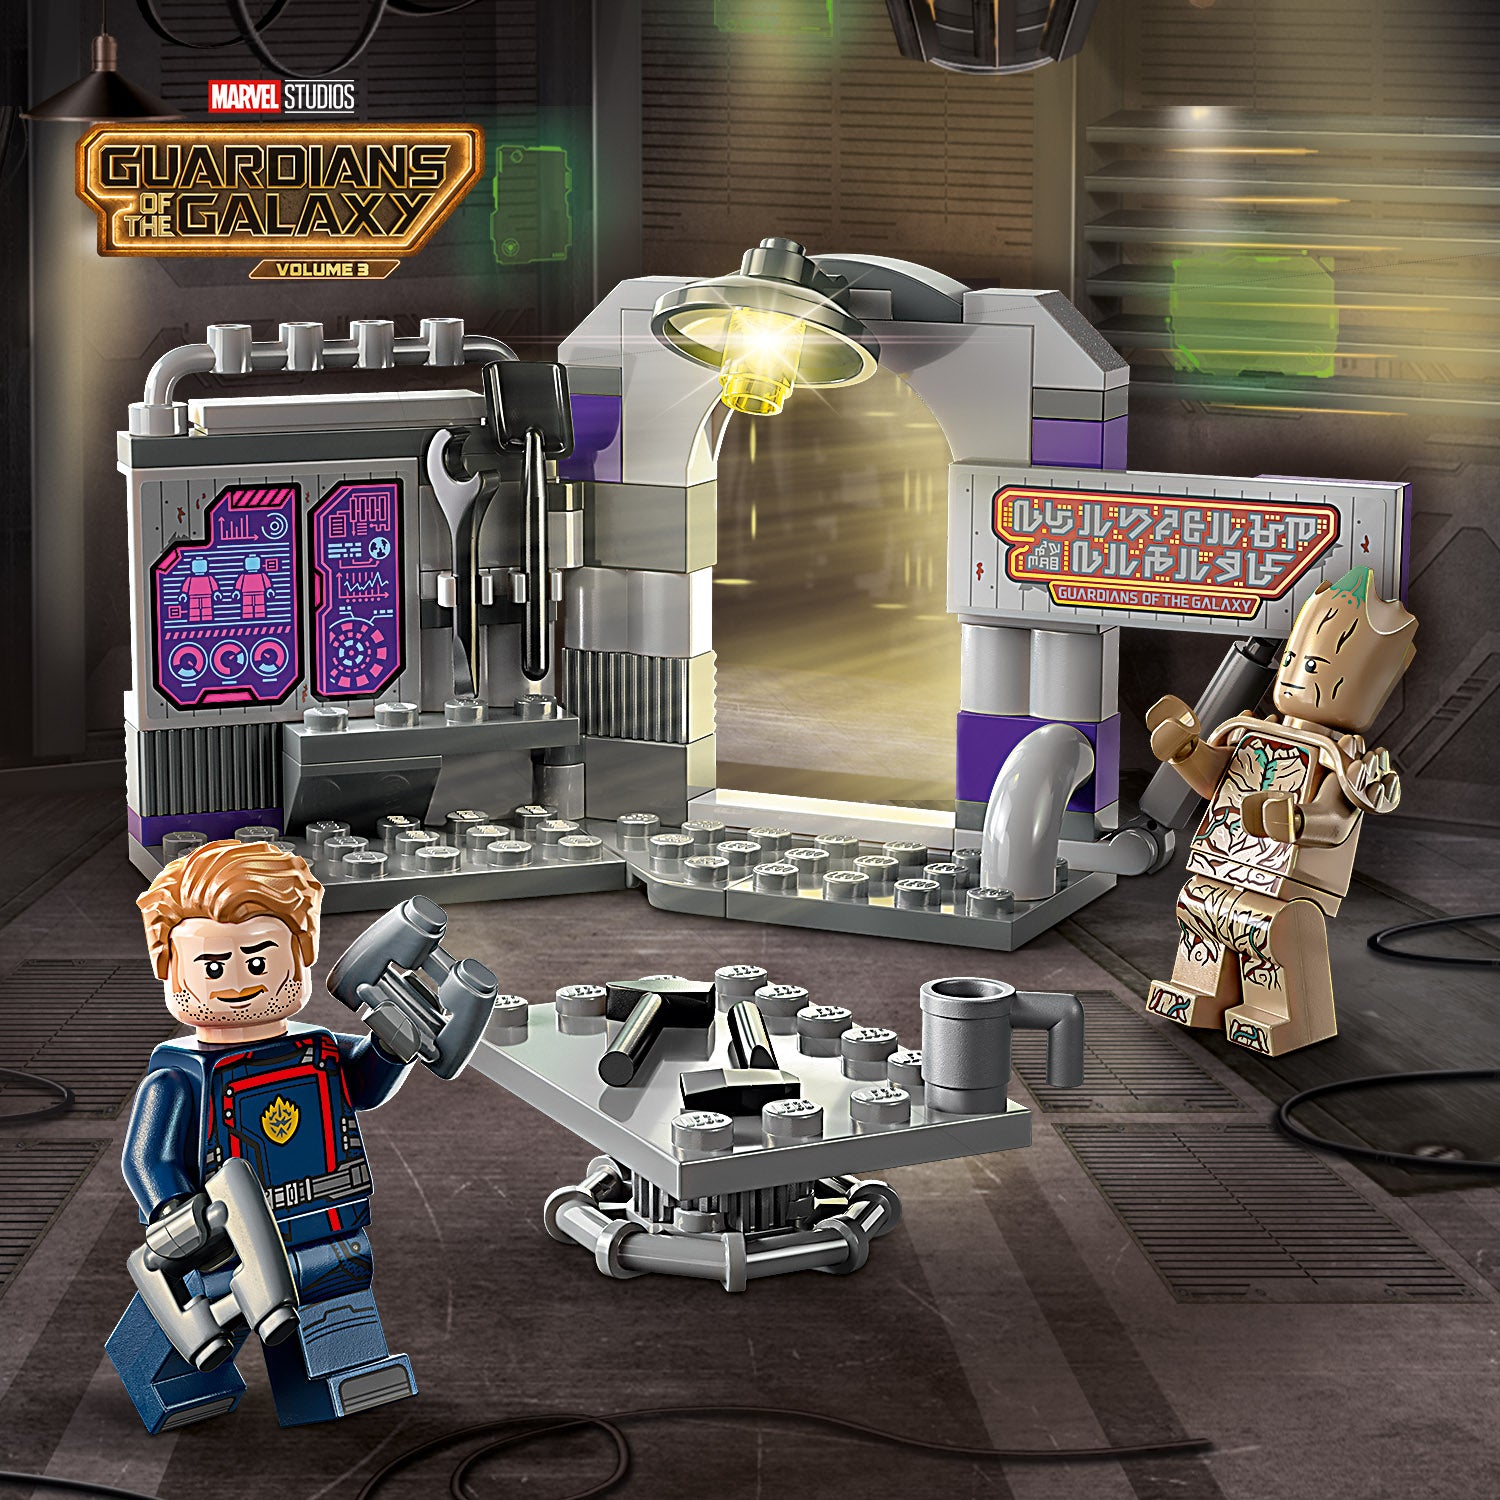 76253 - LEGO® Marvel - Le QG des Gardiens de la Galaxie LEGO